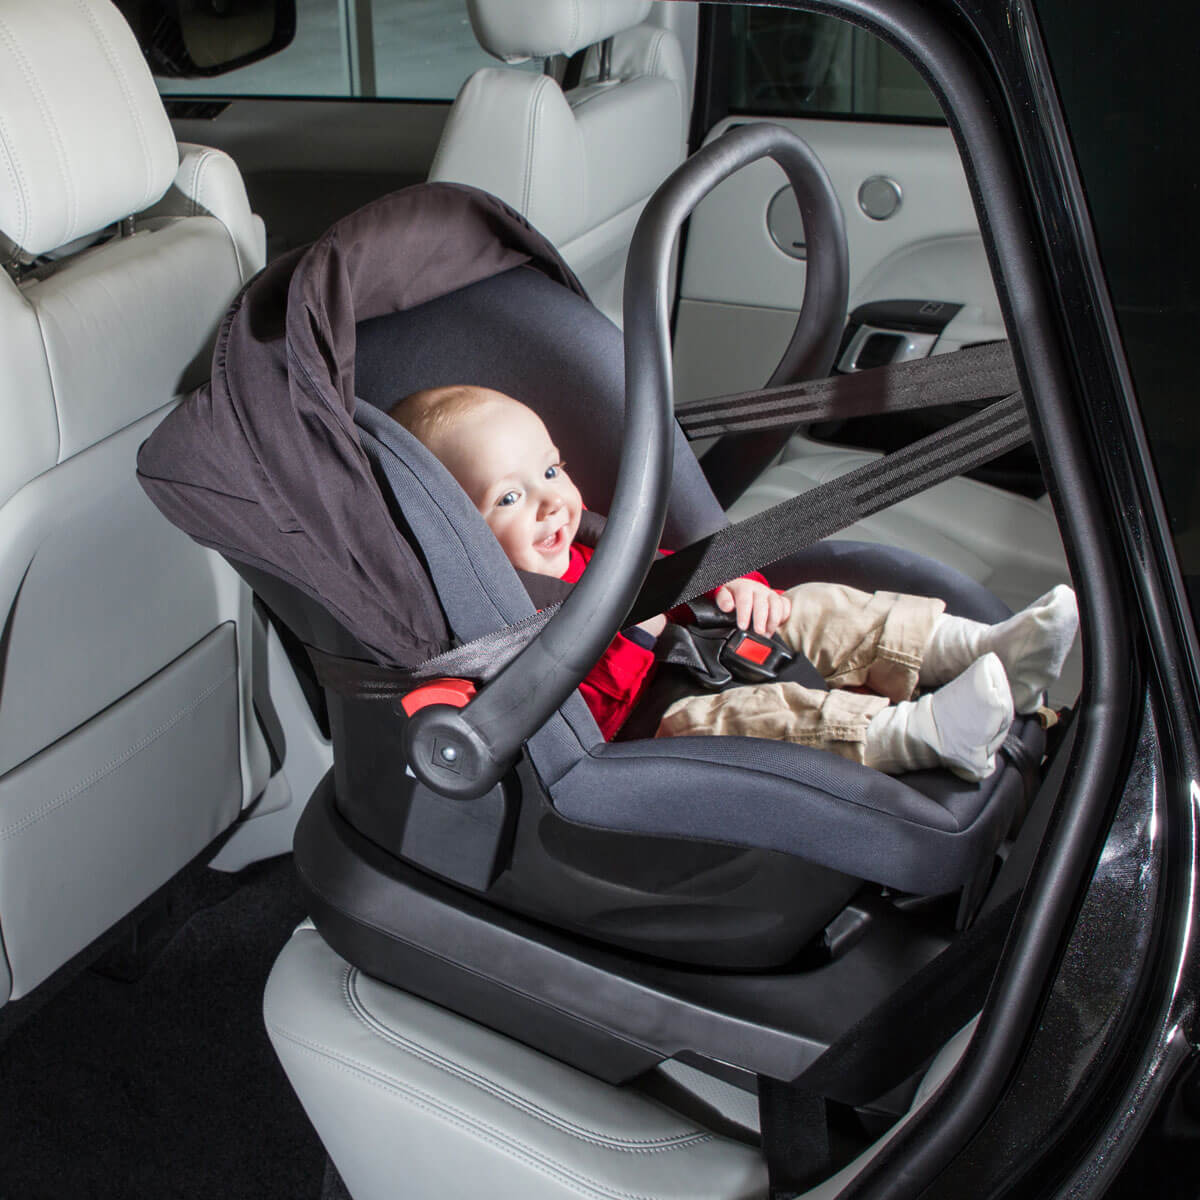 Люлька на переднем сиденье. Автолюлька для новорожденных в машине. Автомобильная люлька для новорожденных в машину. Автомобильное кресло для грудничков. Крепление автолюльки.